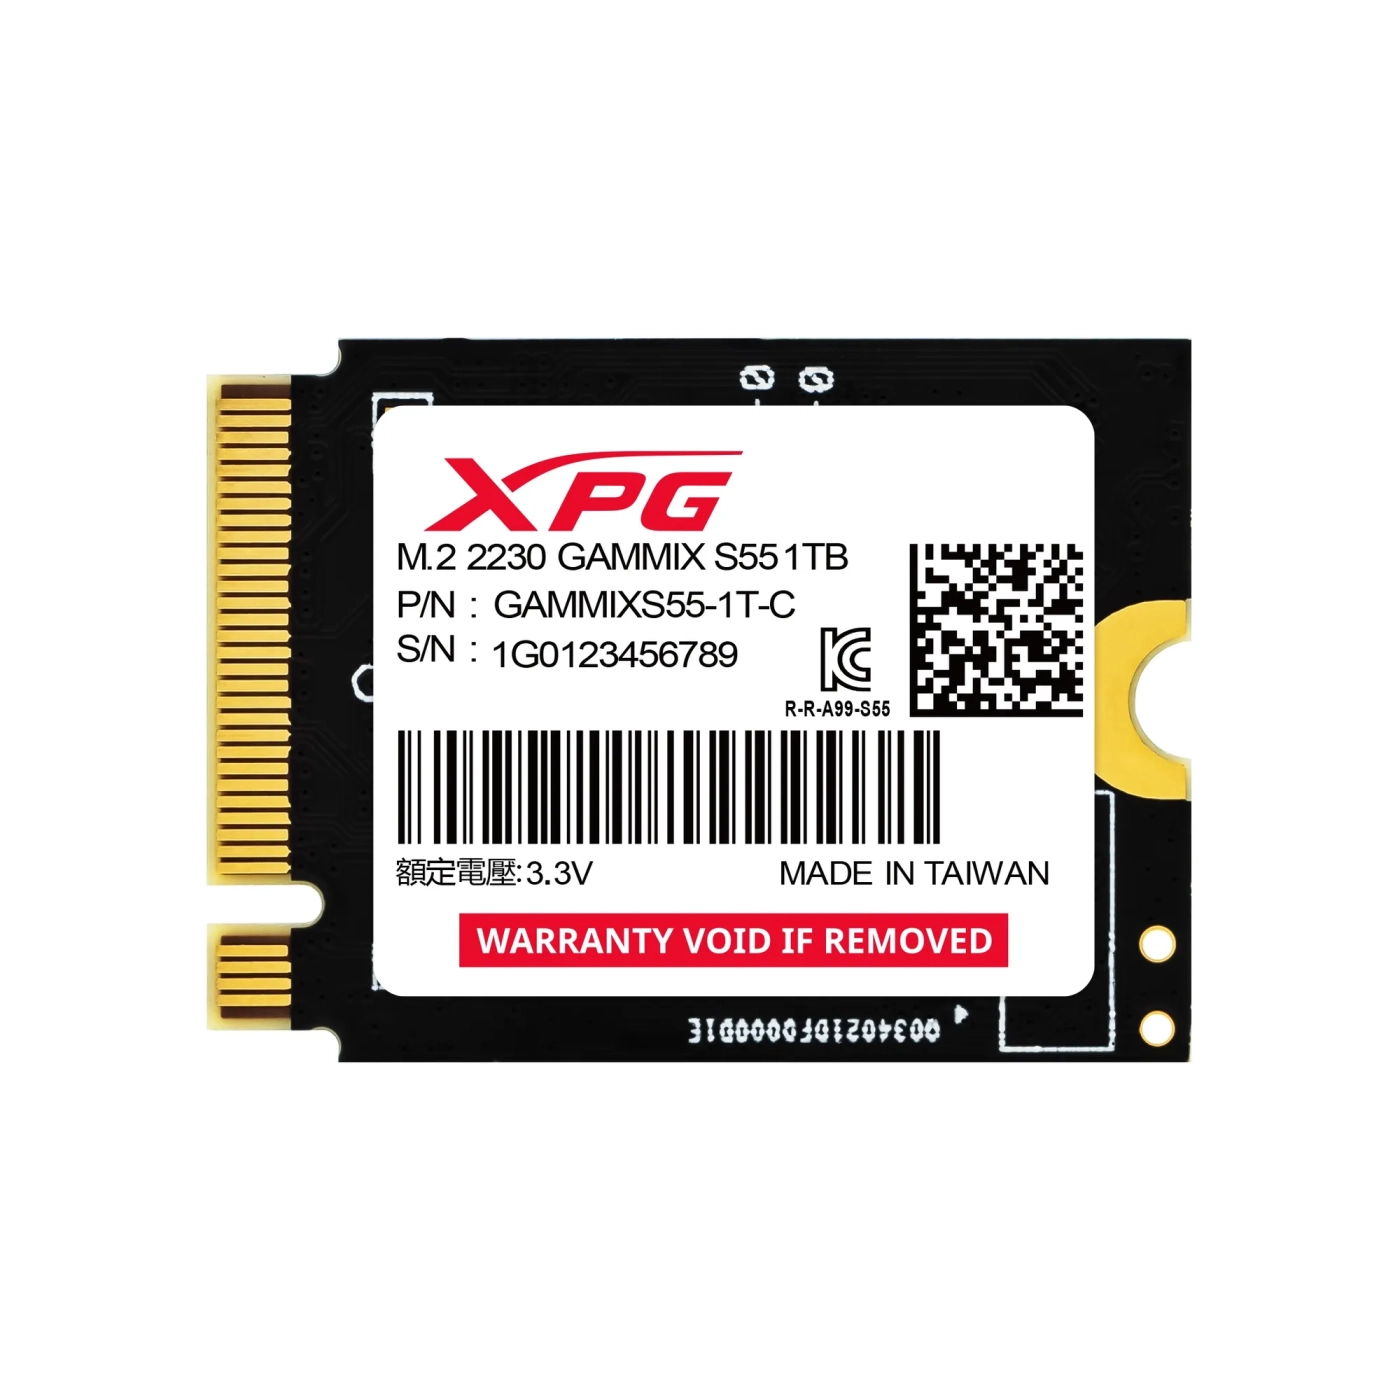 Купить SSD диск Adata Gammix S55 1TB M.2 (SGAMMIXS55-1T-C) - фото 1